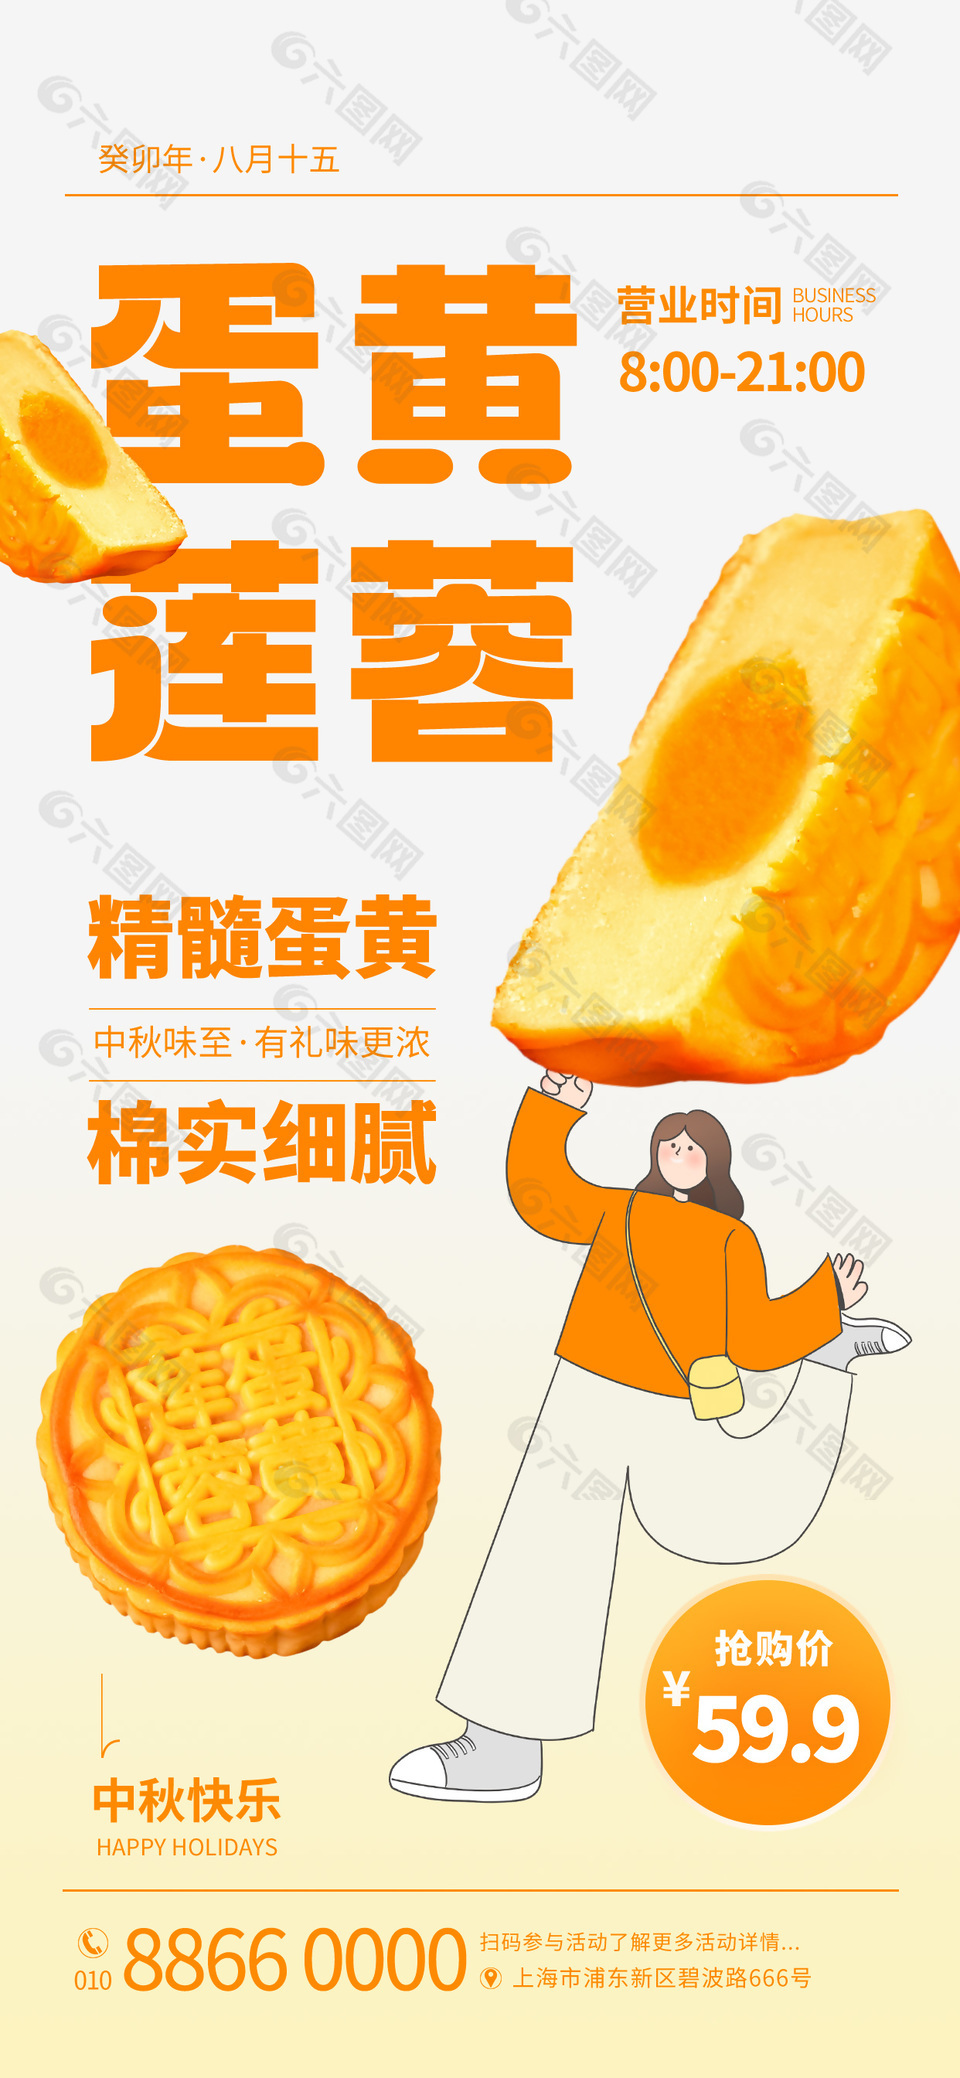 中秋快乐蛋黄莲蓉月饼活动简约促销海报